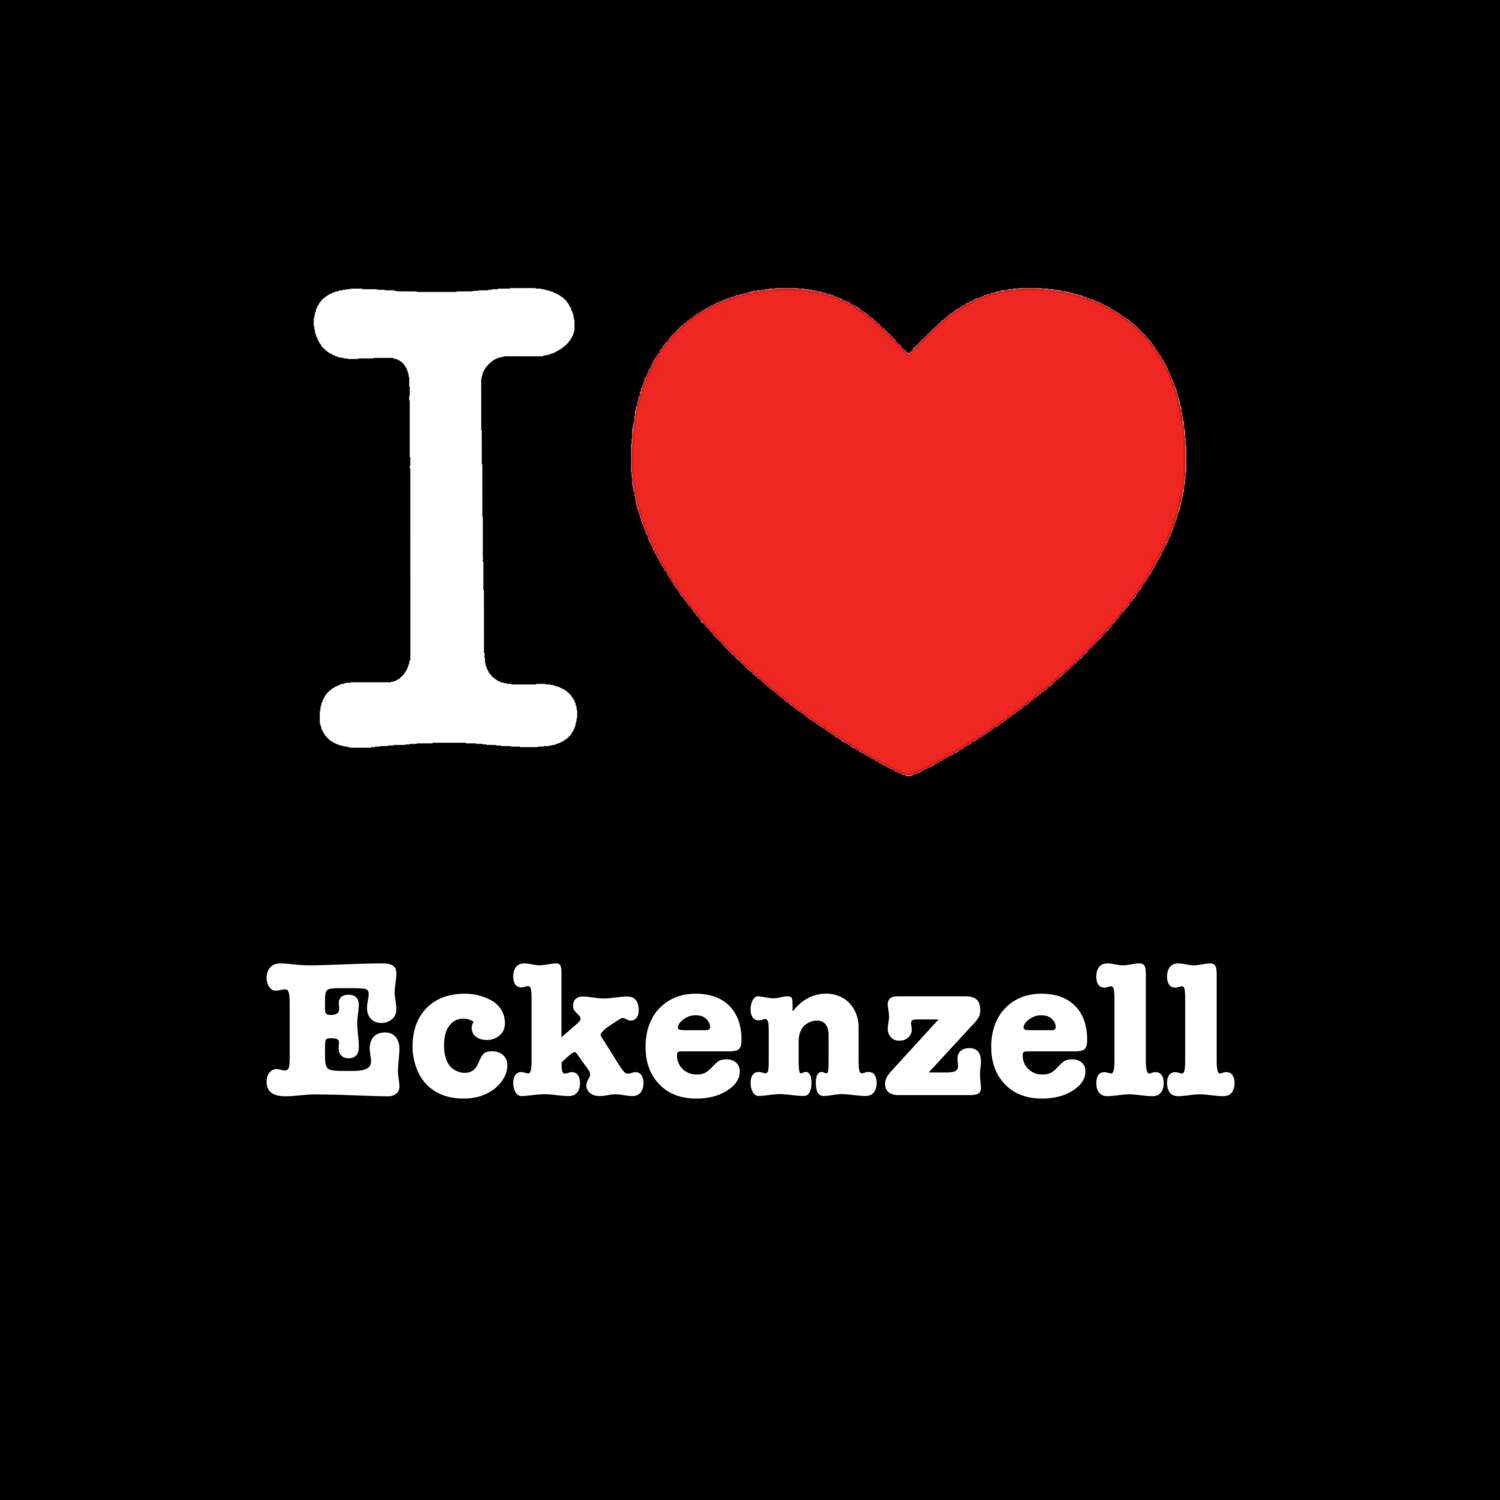 Eckenzell T-Shirt »I love«